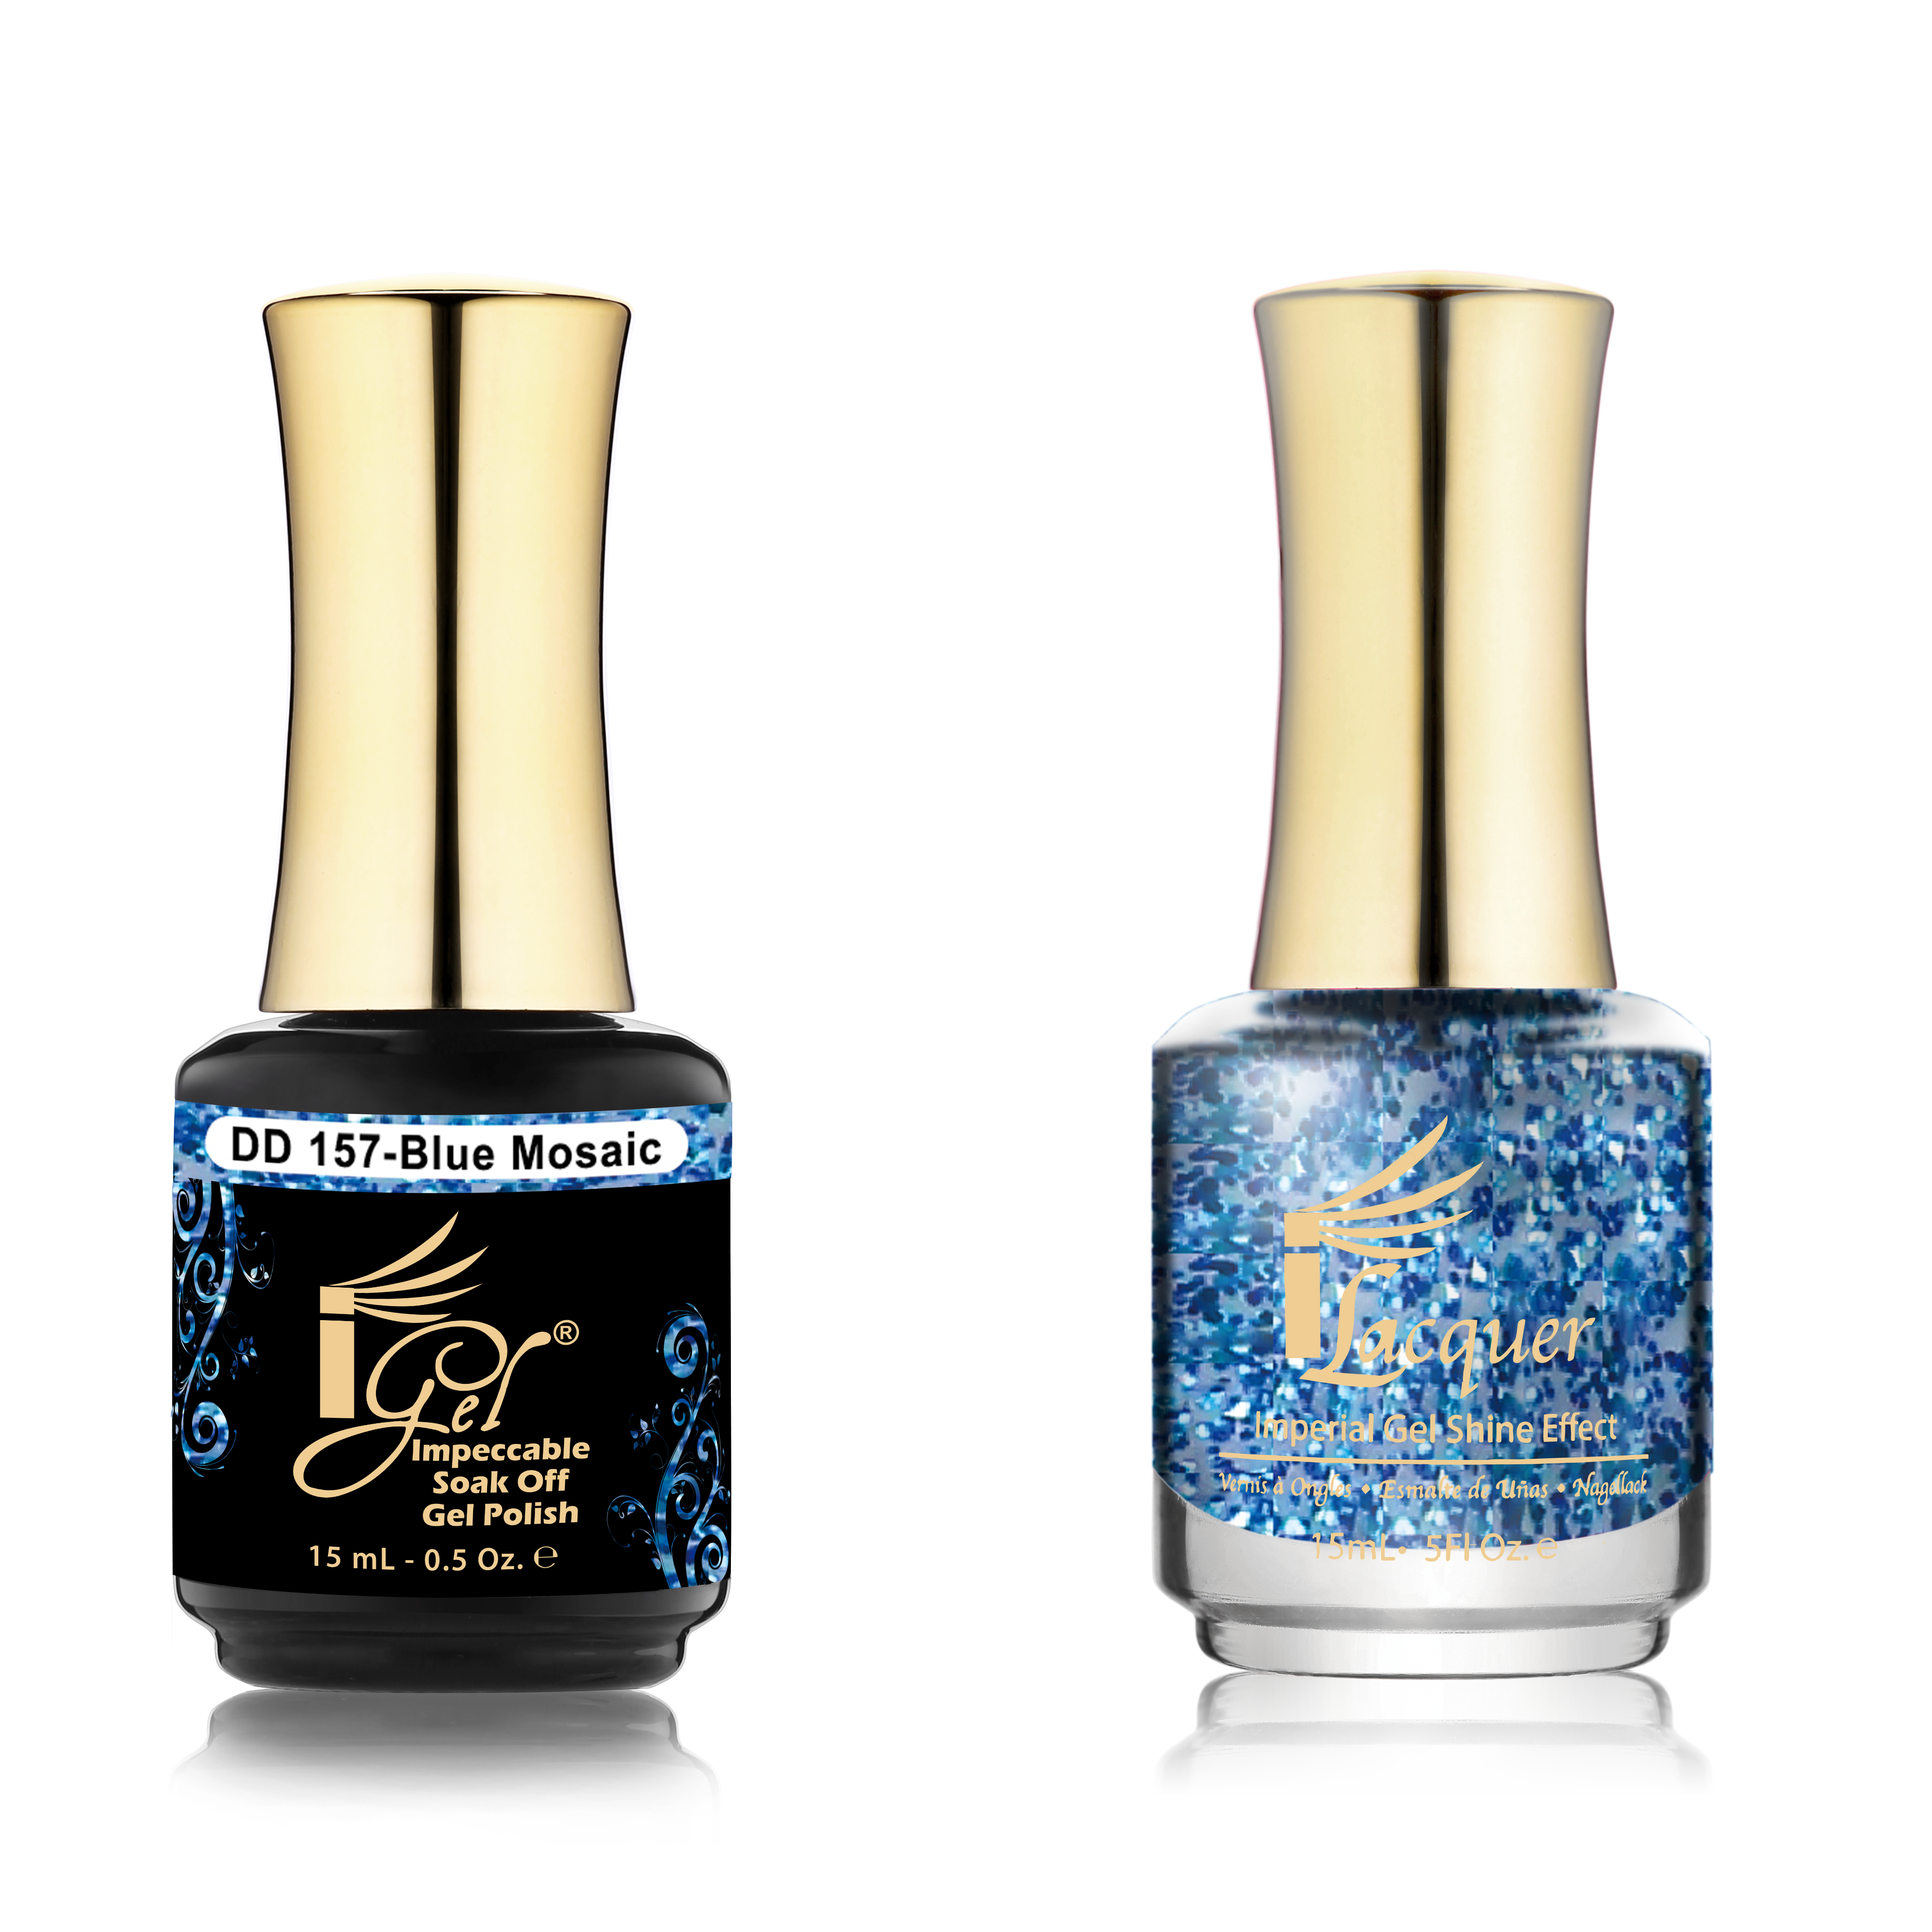 iGel Beauty - Dip & Dap Duo - DD157 Blue Mosaic